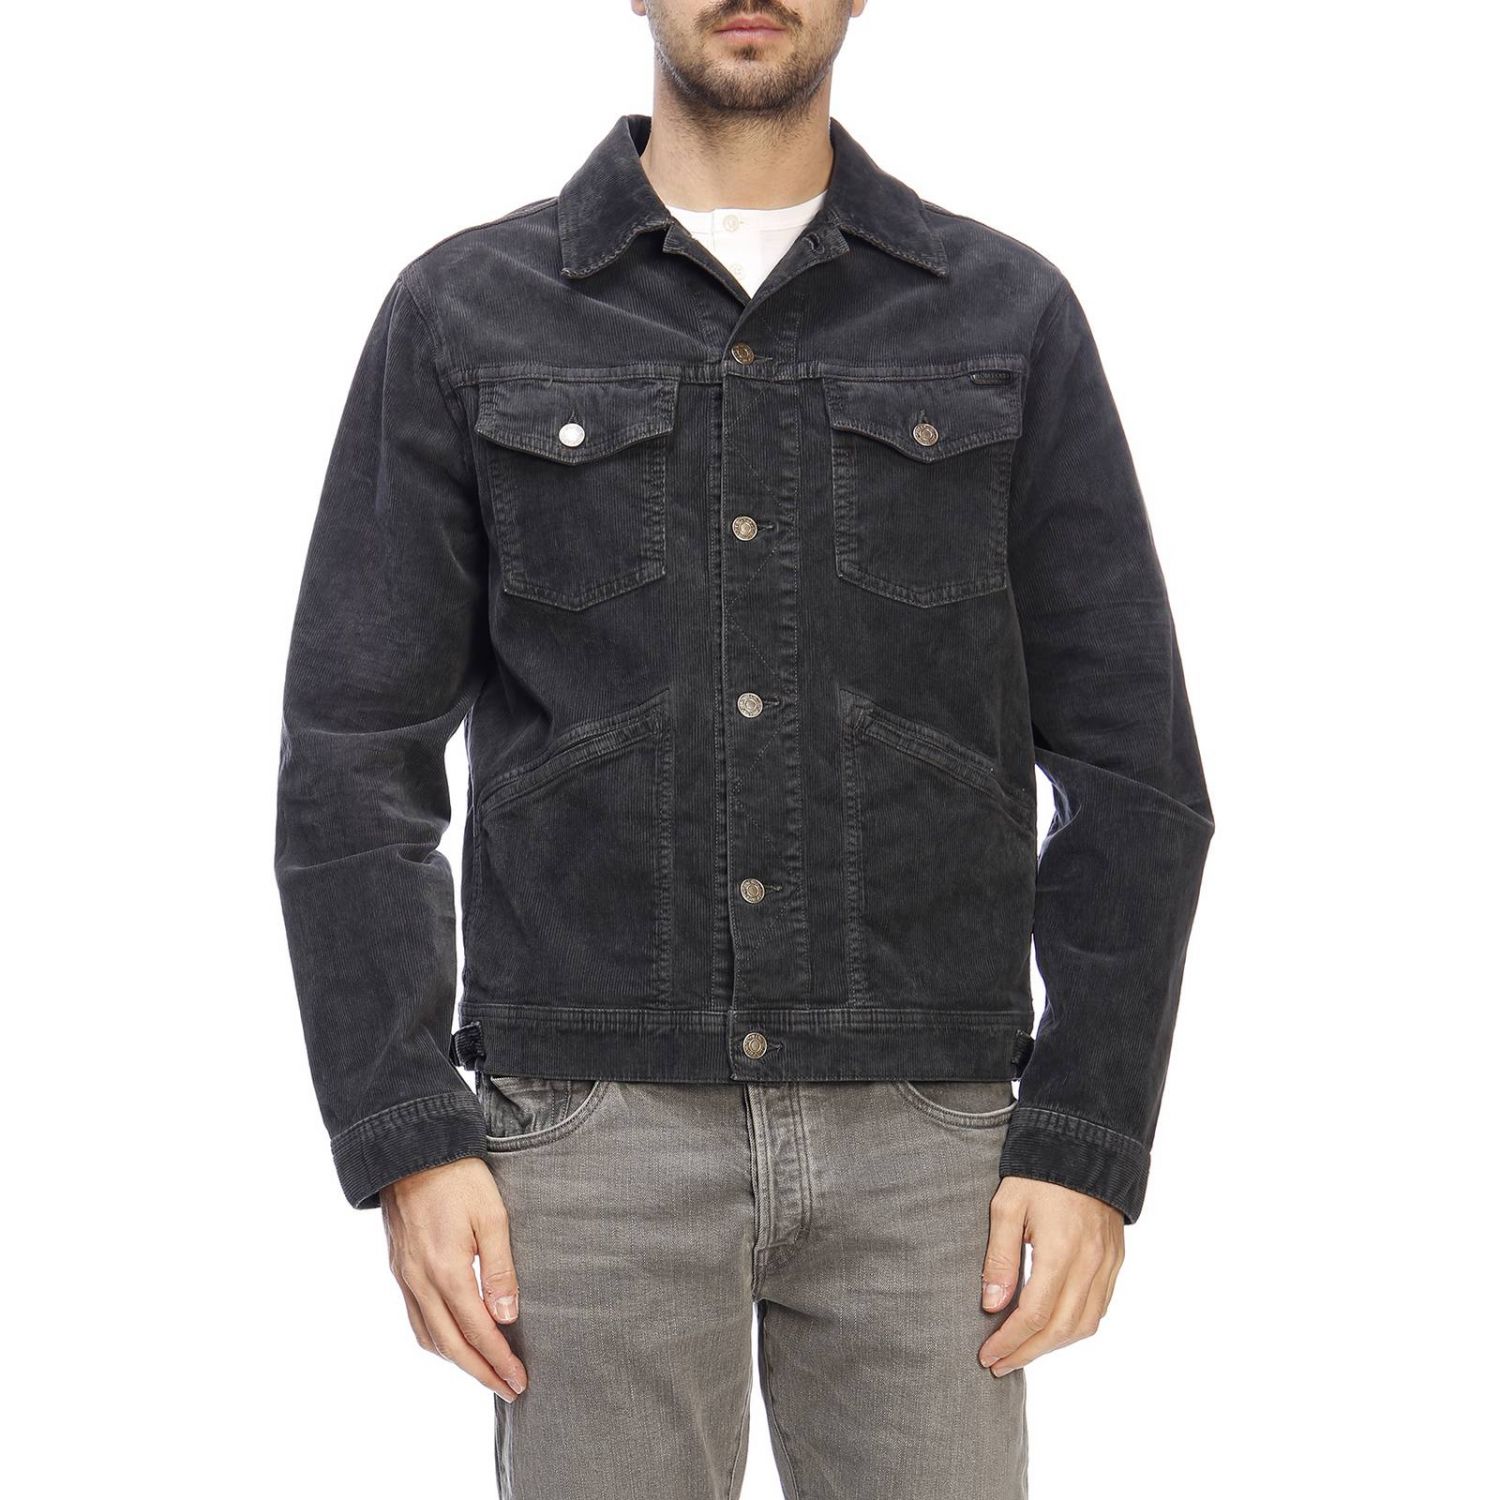 Tom Ford Outlet: jacket for man - Grey | Tom Ford jacket TFD111BSJ19 ...